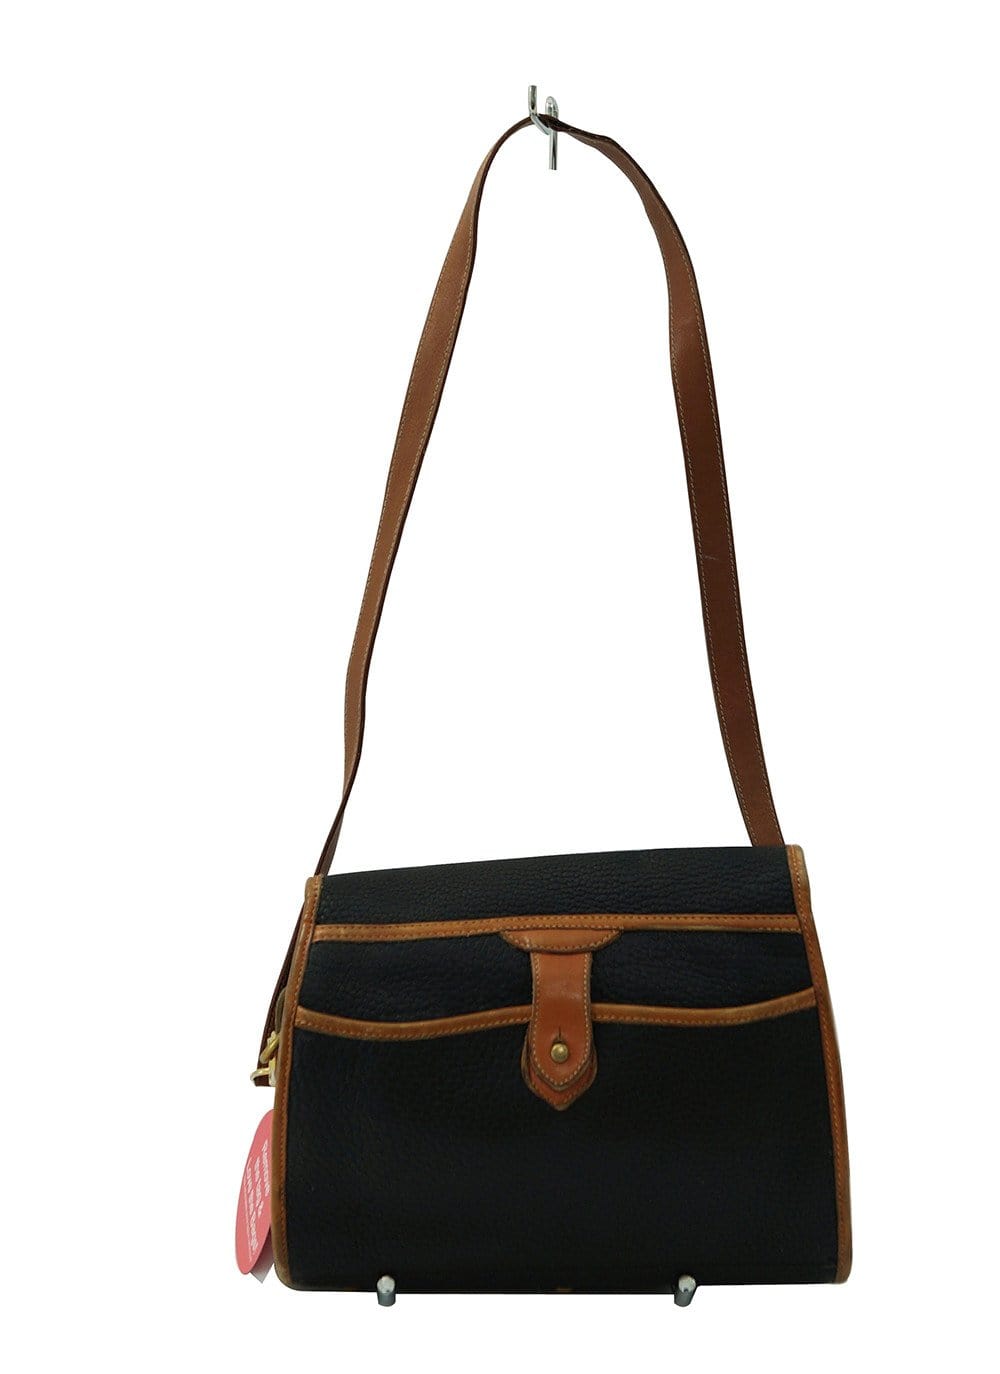 DOONEY & BOURKE Vintage Taupe & Tan Leather Flap Crossbody Shoulder Bag